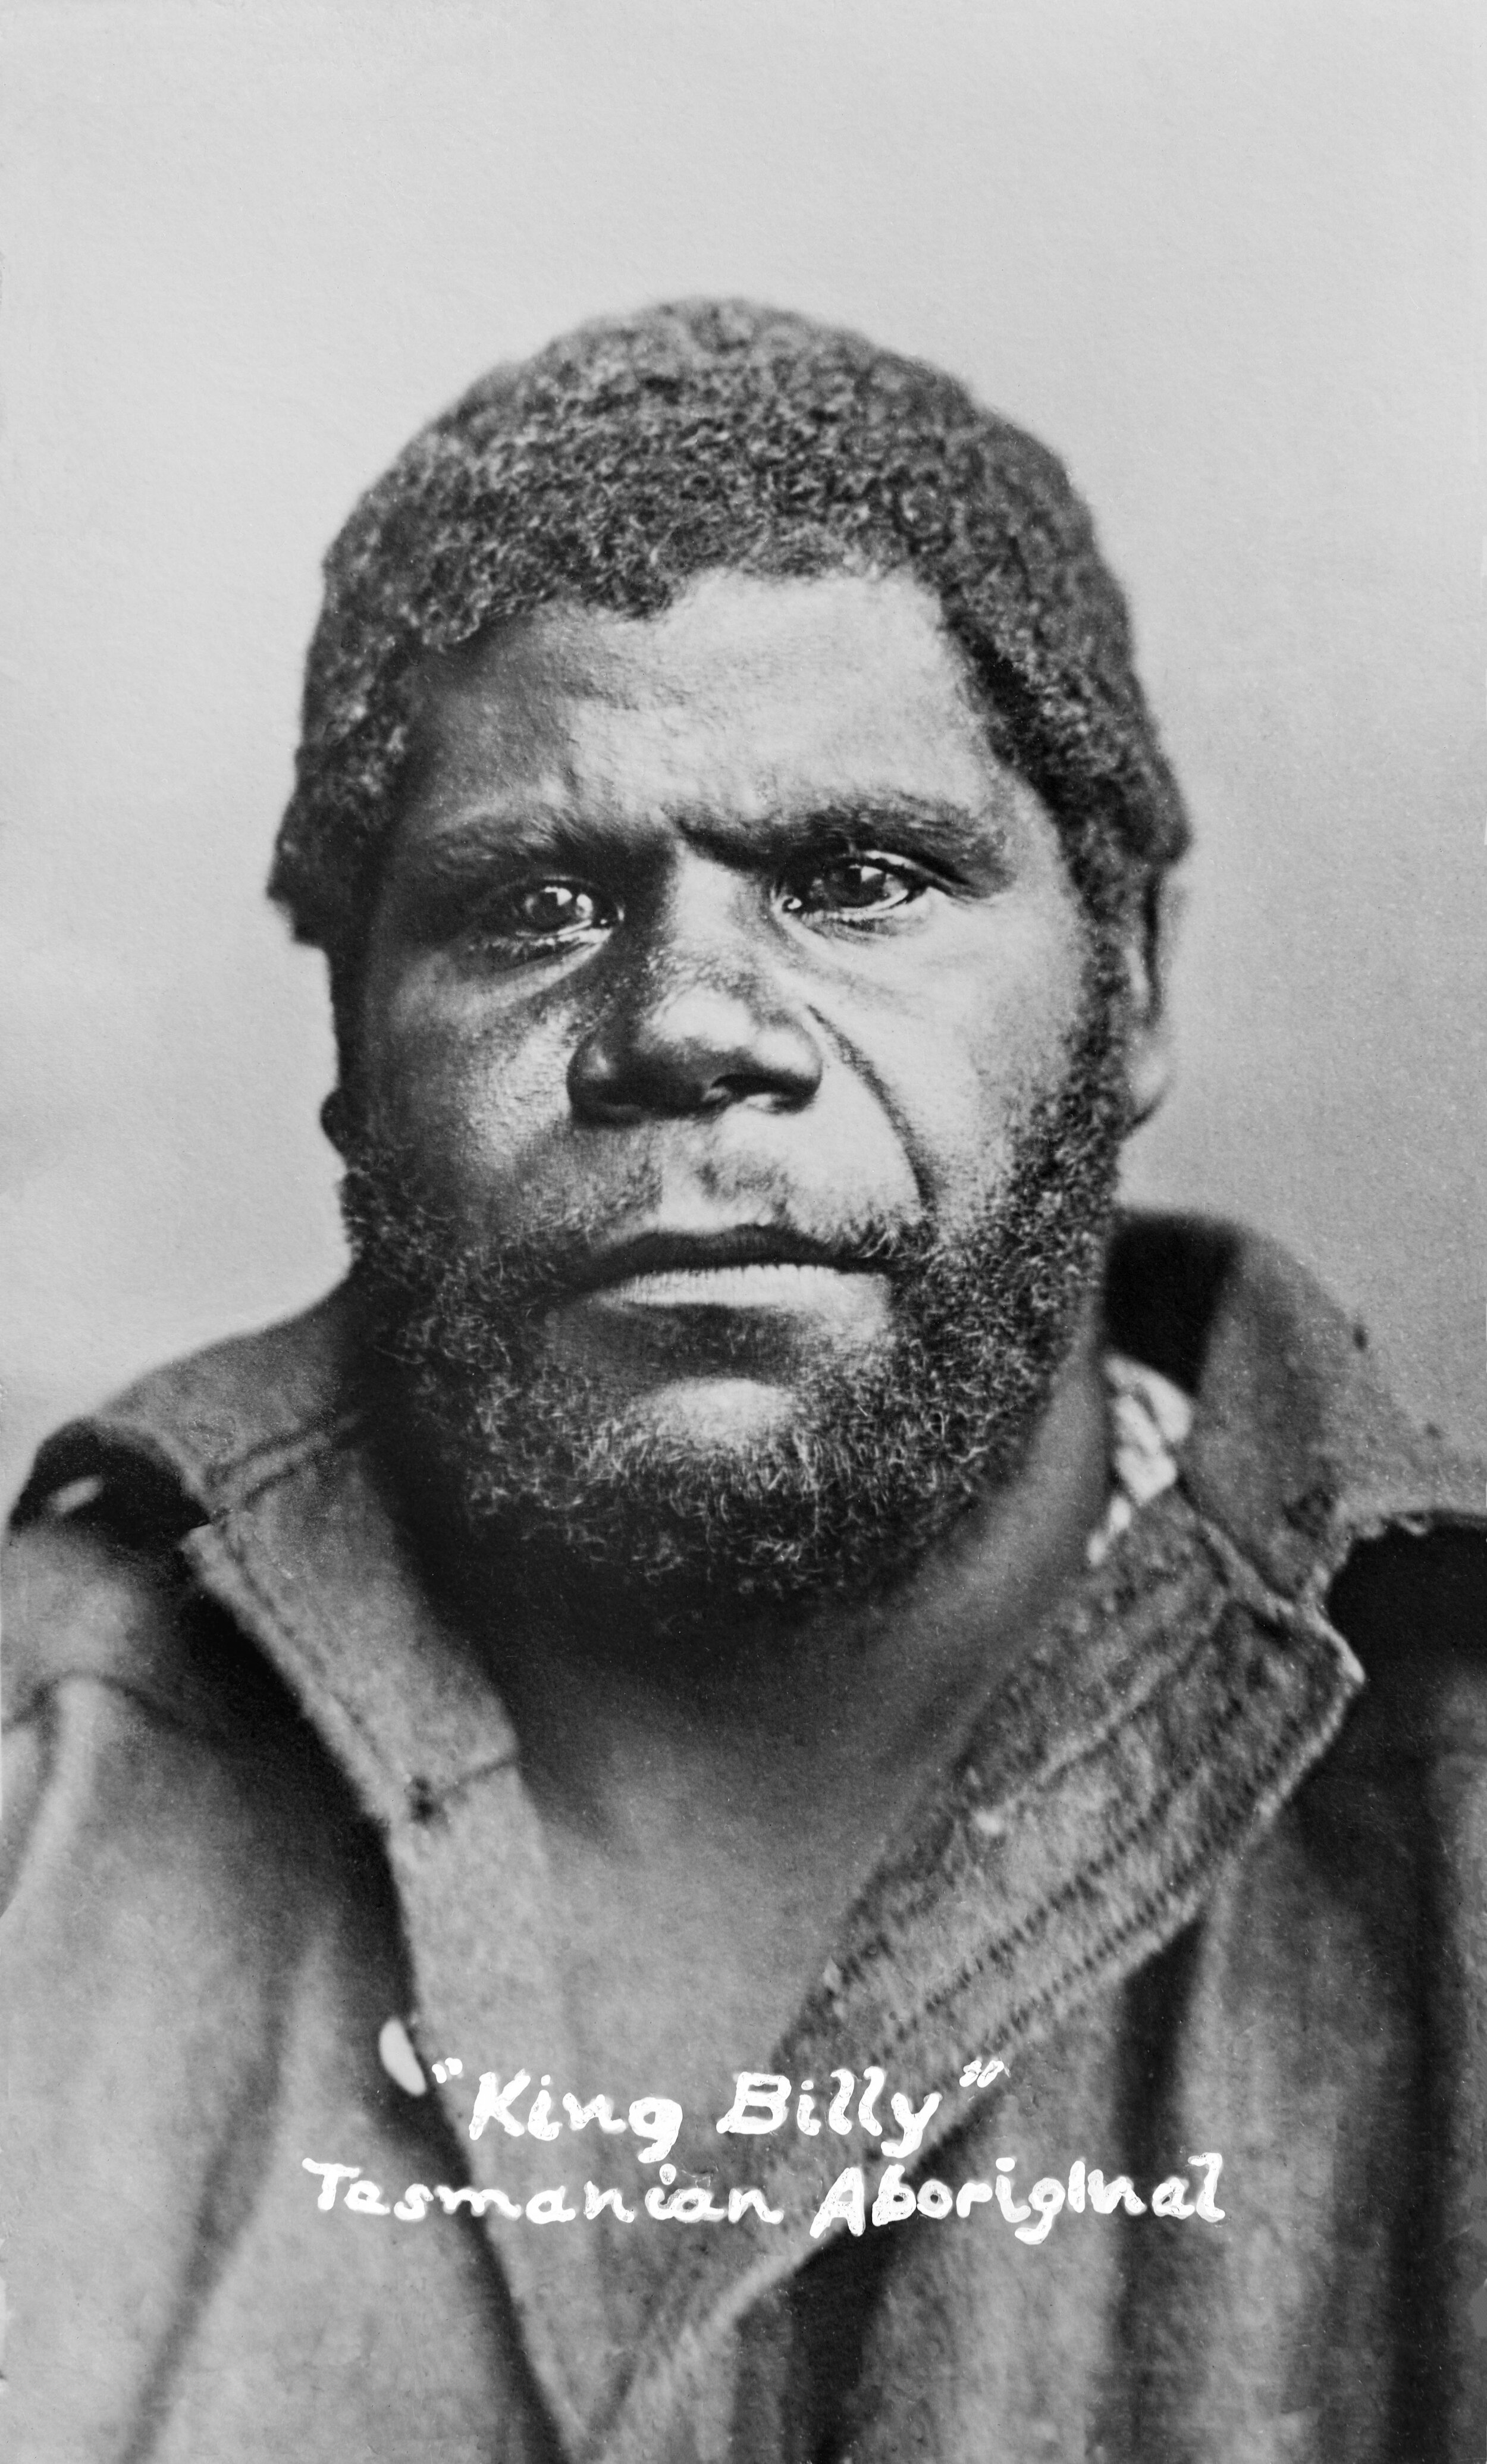 Last Tasmanians portraits